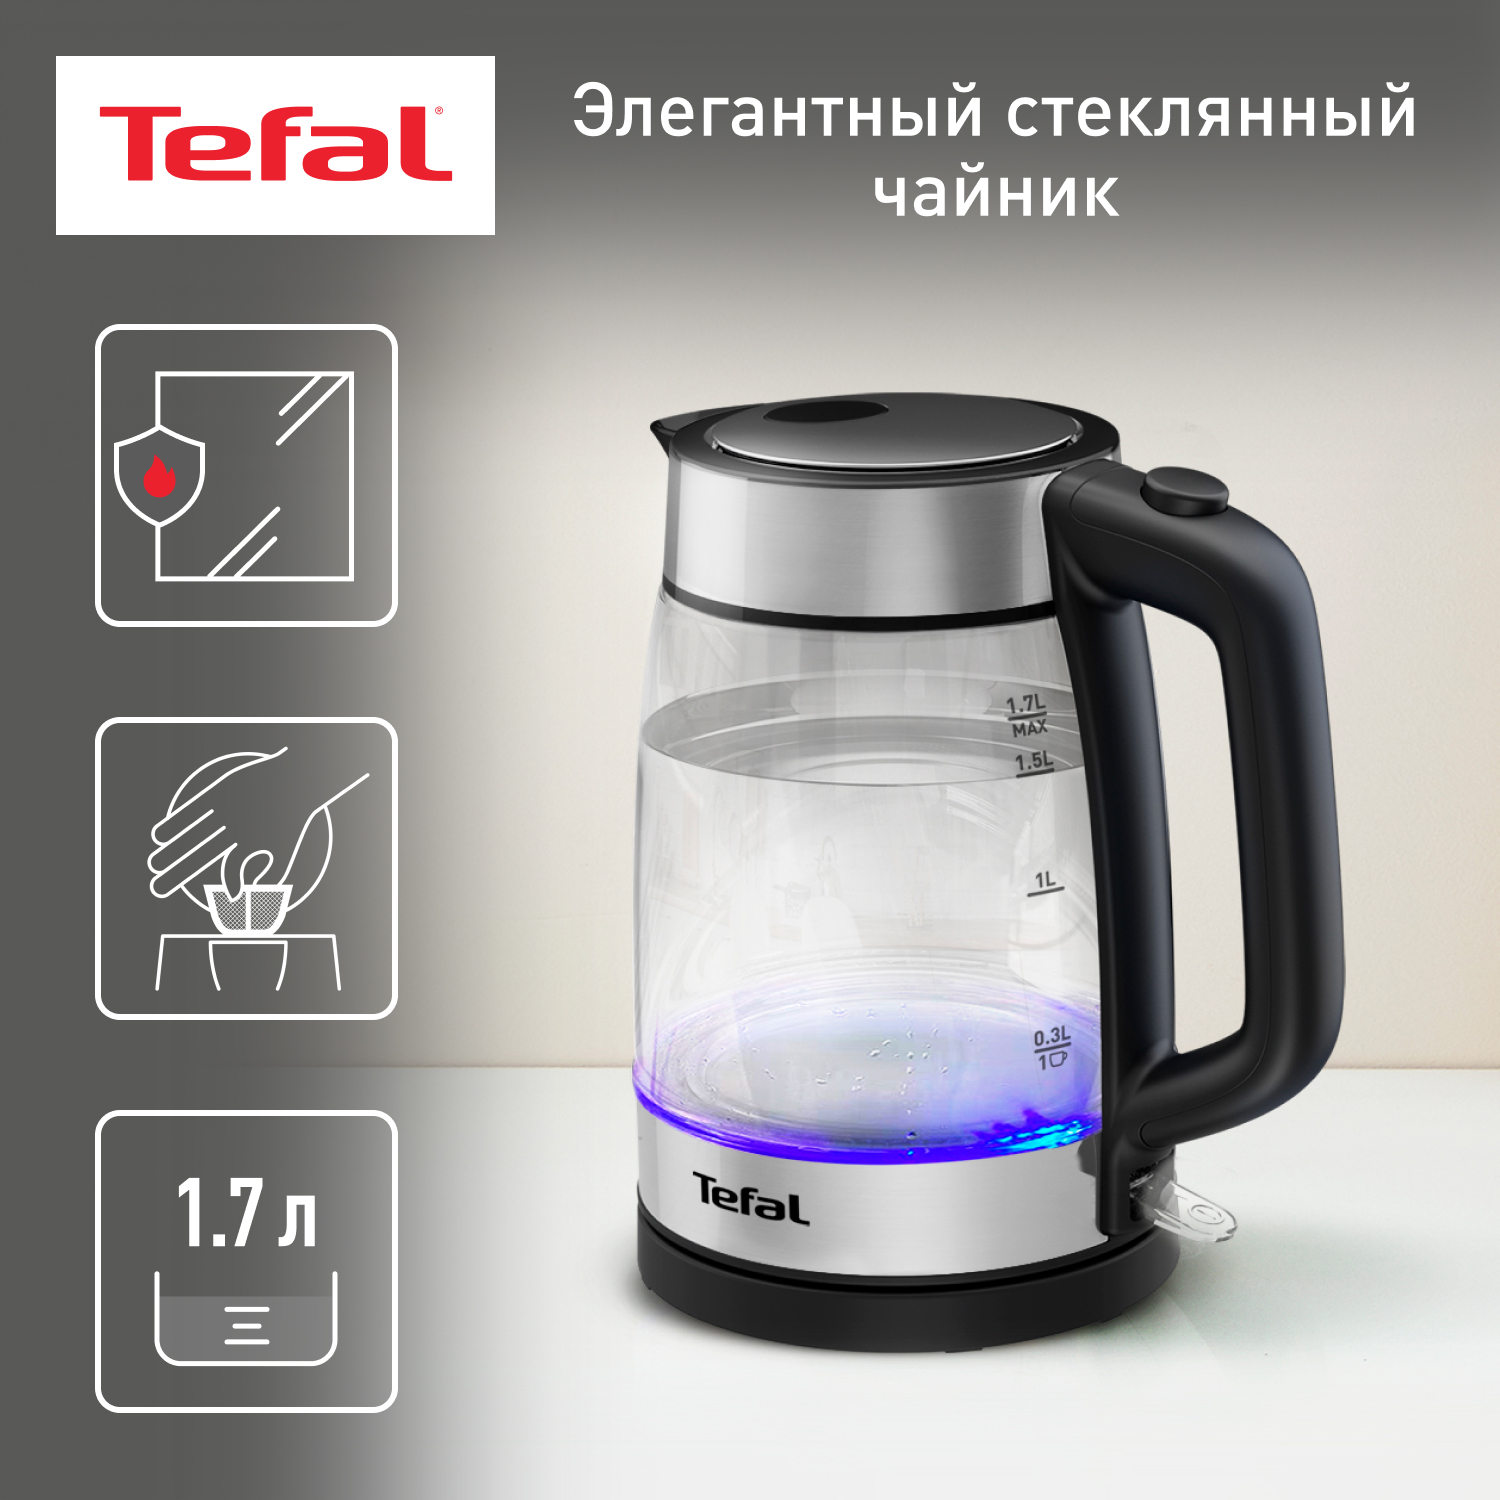 Чайник электрический Tefal KI700830 1.7 л прозрачный, серебристый, черный открытка подставка вот так выглядит крутой парень